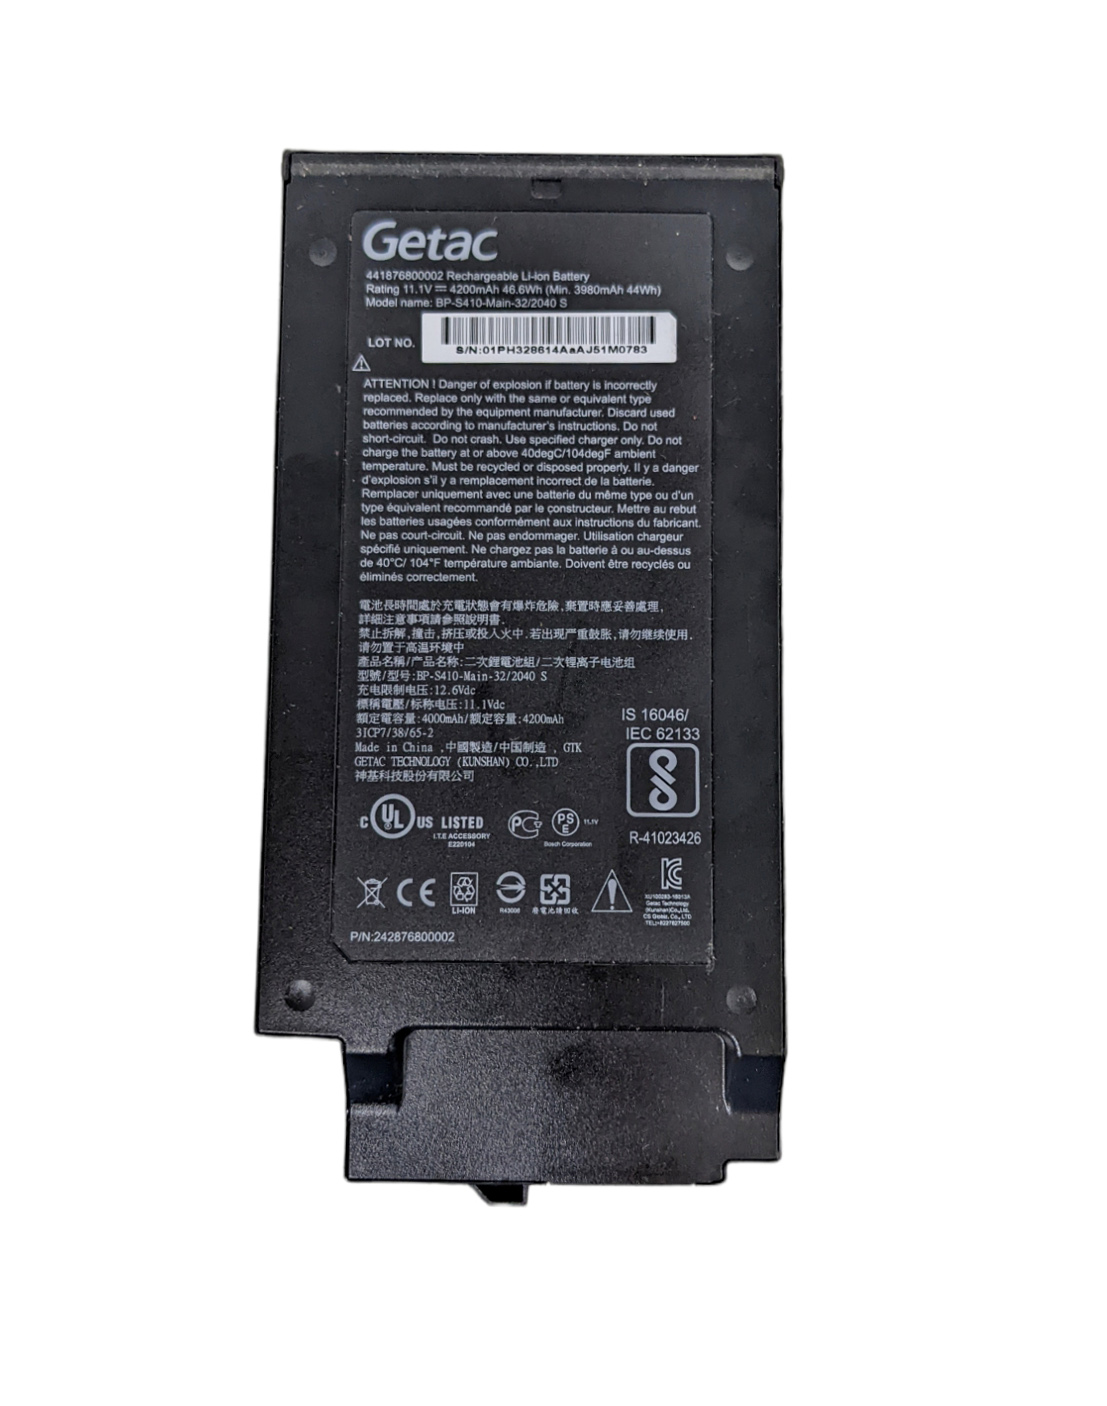 Battery Getac BP-S410-2nd-32 4200mAh 46.6Wh